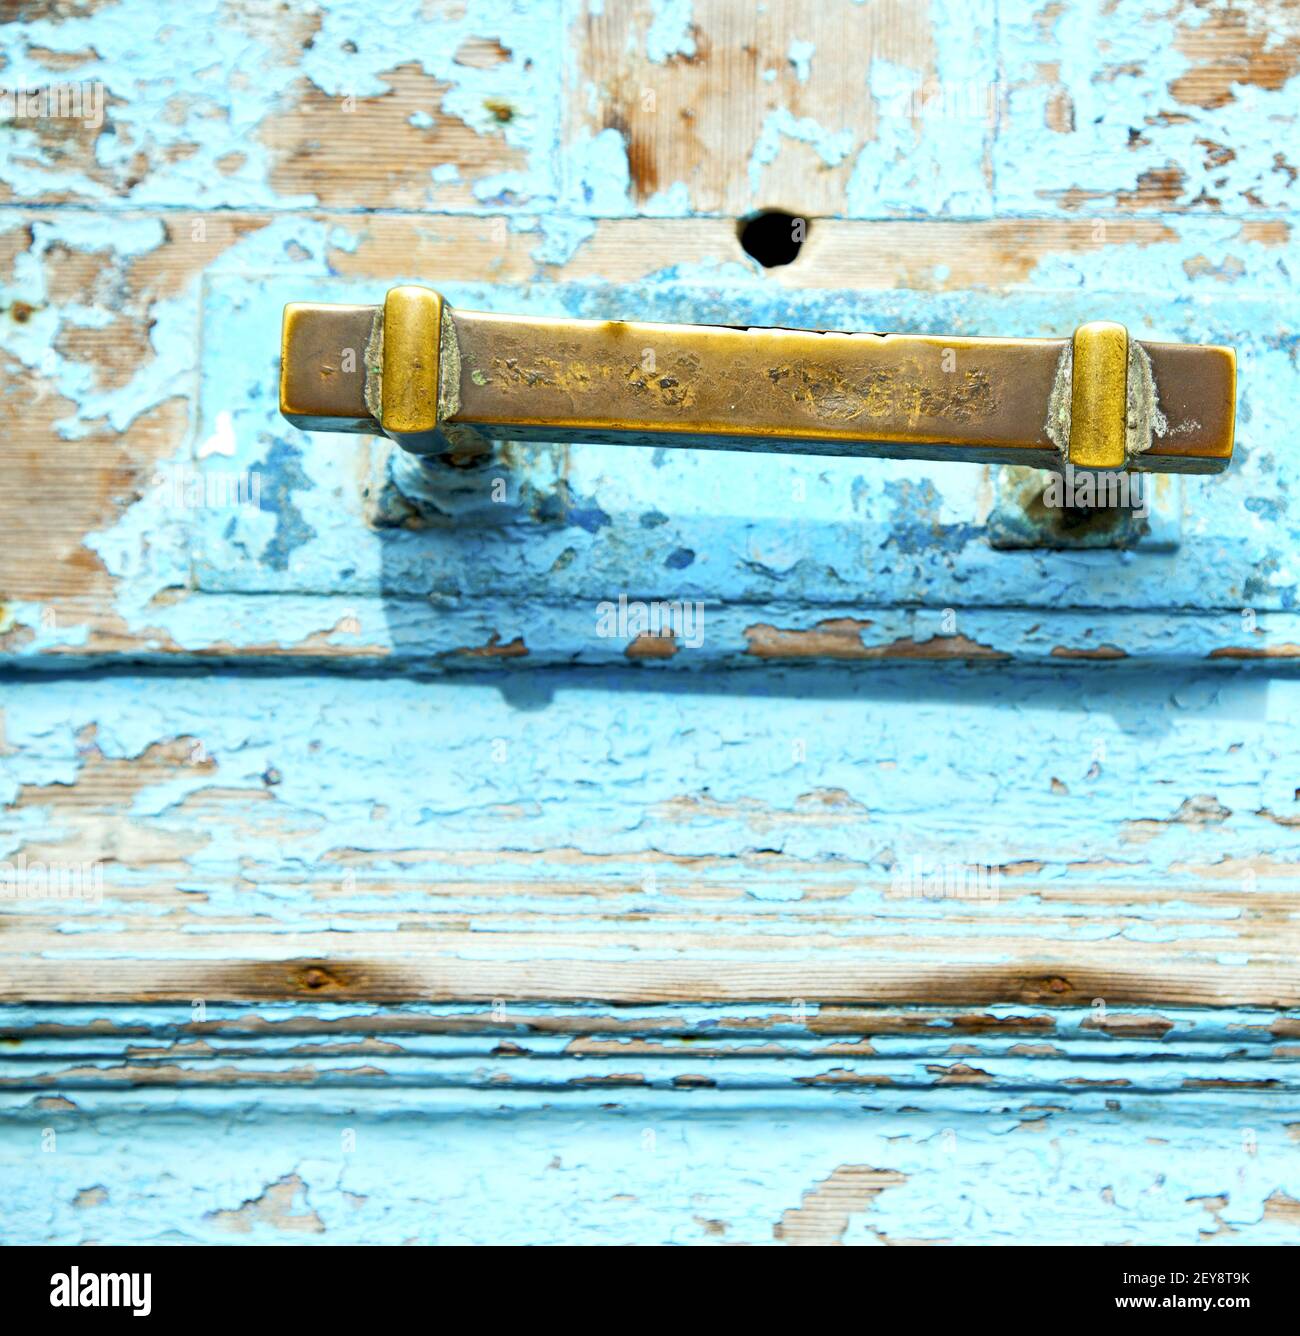 Rostiger Metallnagel schmutzig abgestreifte Farbe im blauen Holz Tür und marokko Klopfer Stockfoto